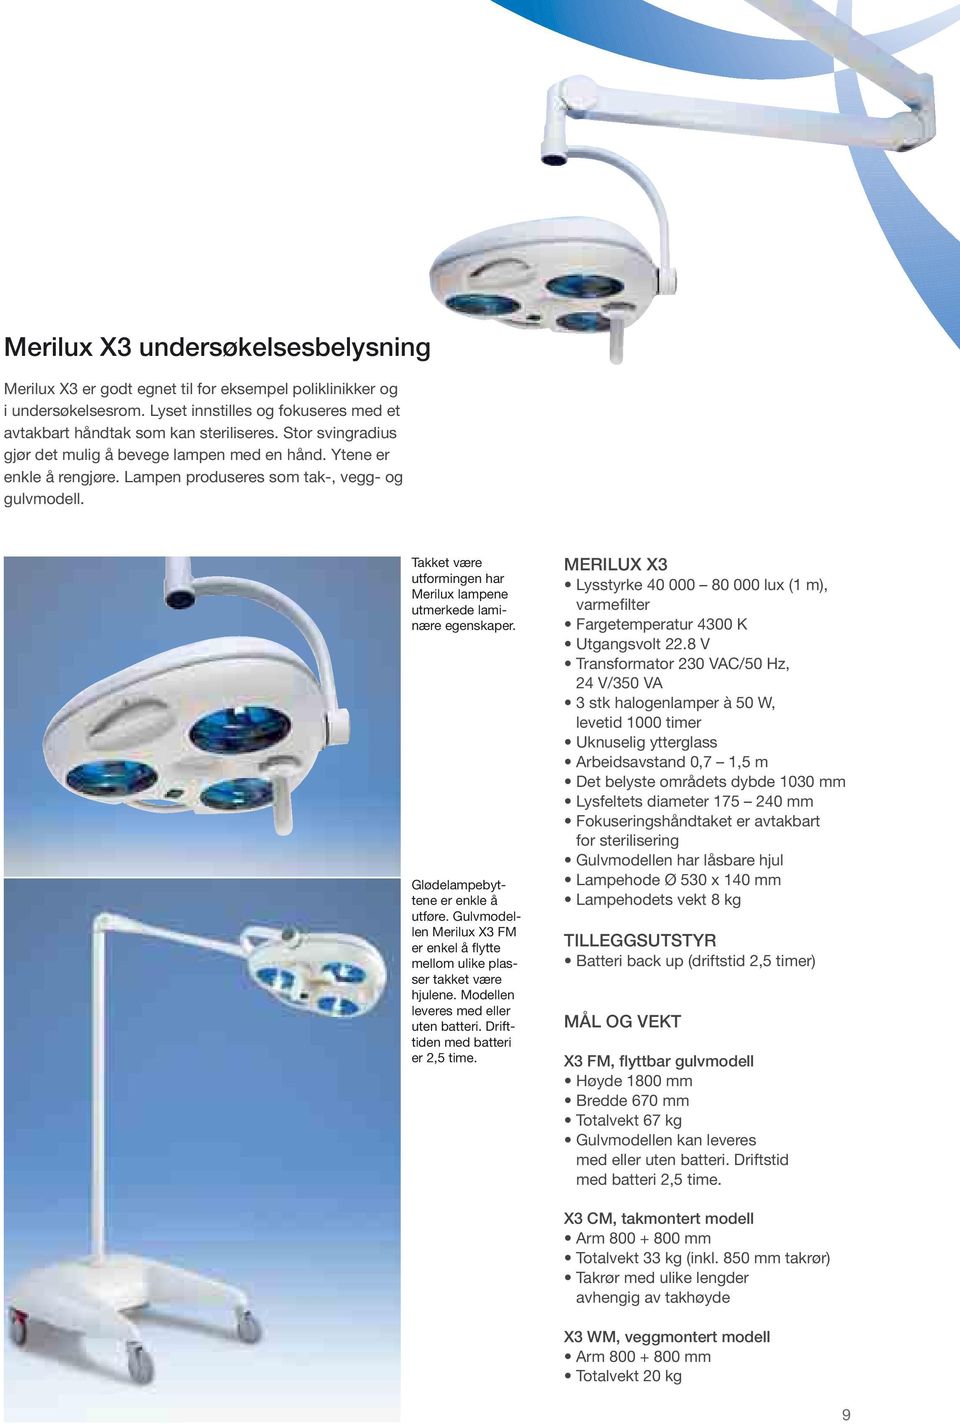 Takket være utformingen har Merilux lampene utmerkede laminære egenskaper. Glødelampebyttene er enkle å utføre. Gulvmodellen Merilux X3 FM er enkel å flytte mellom ulike plasser takket være hjulene.